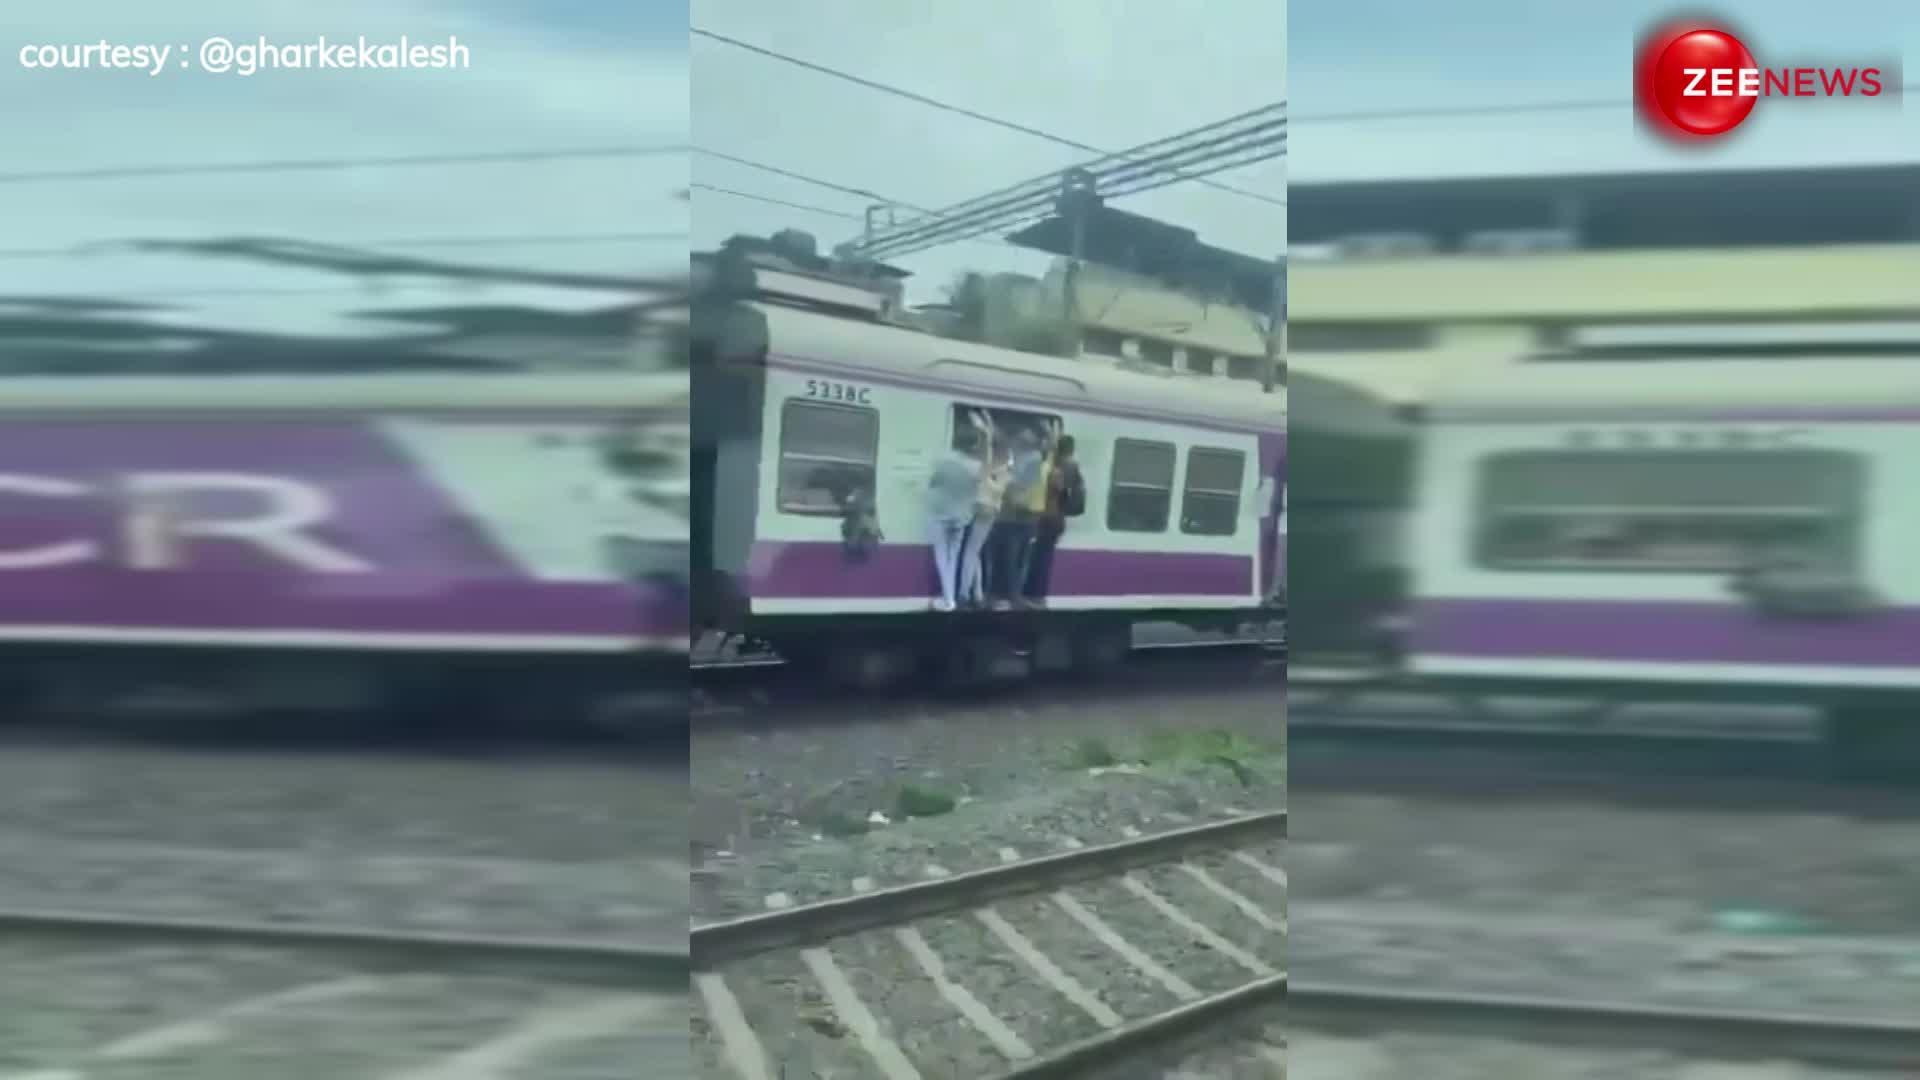 ट्रेन के दरवाजे पर लटका शख्स, झटके में खत्म हो गई जिंदगी, वायरल हो रहा है ये दिल-दहलाने वाला video